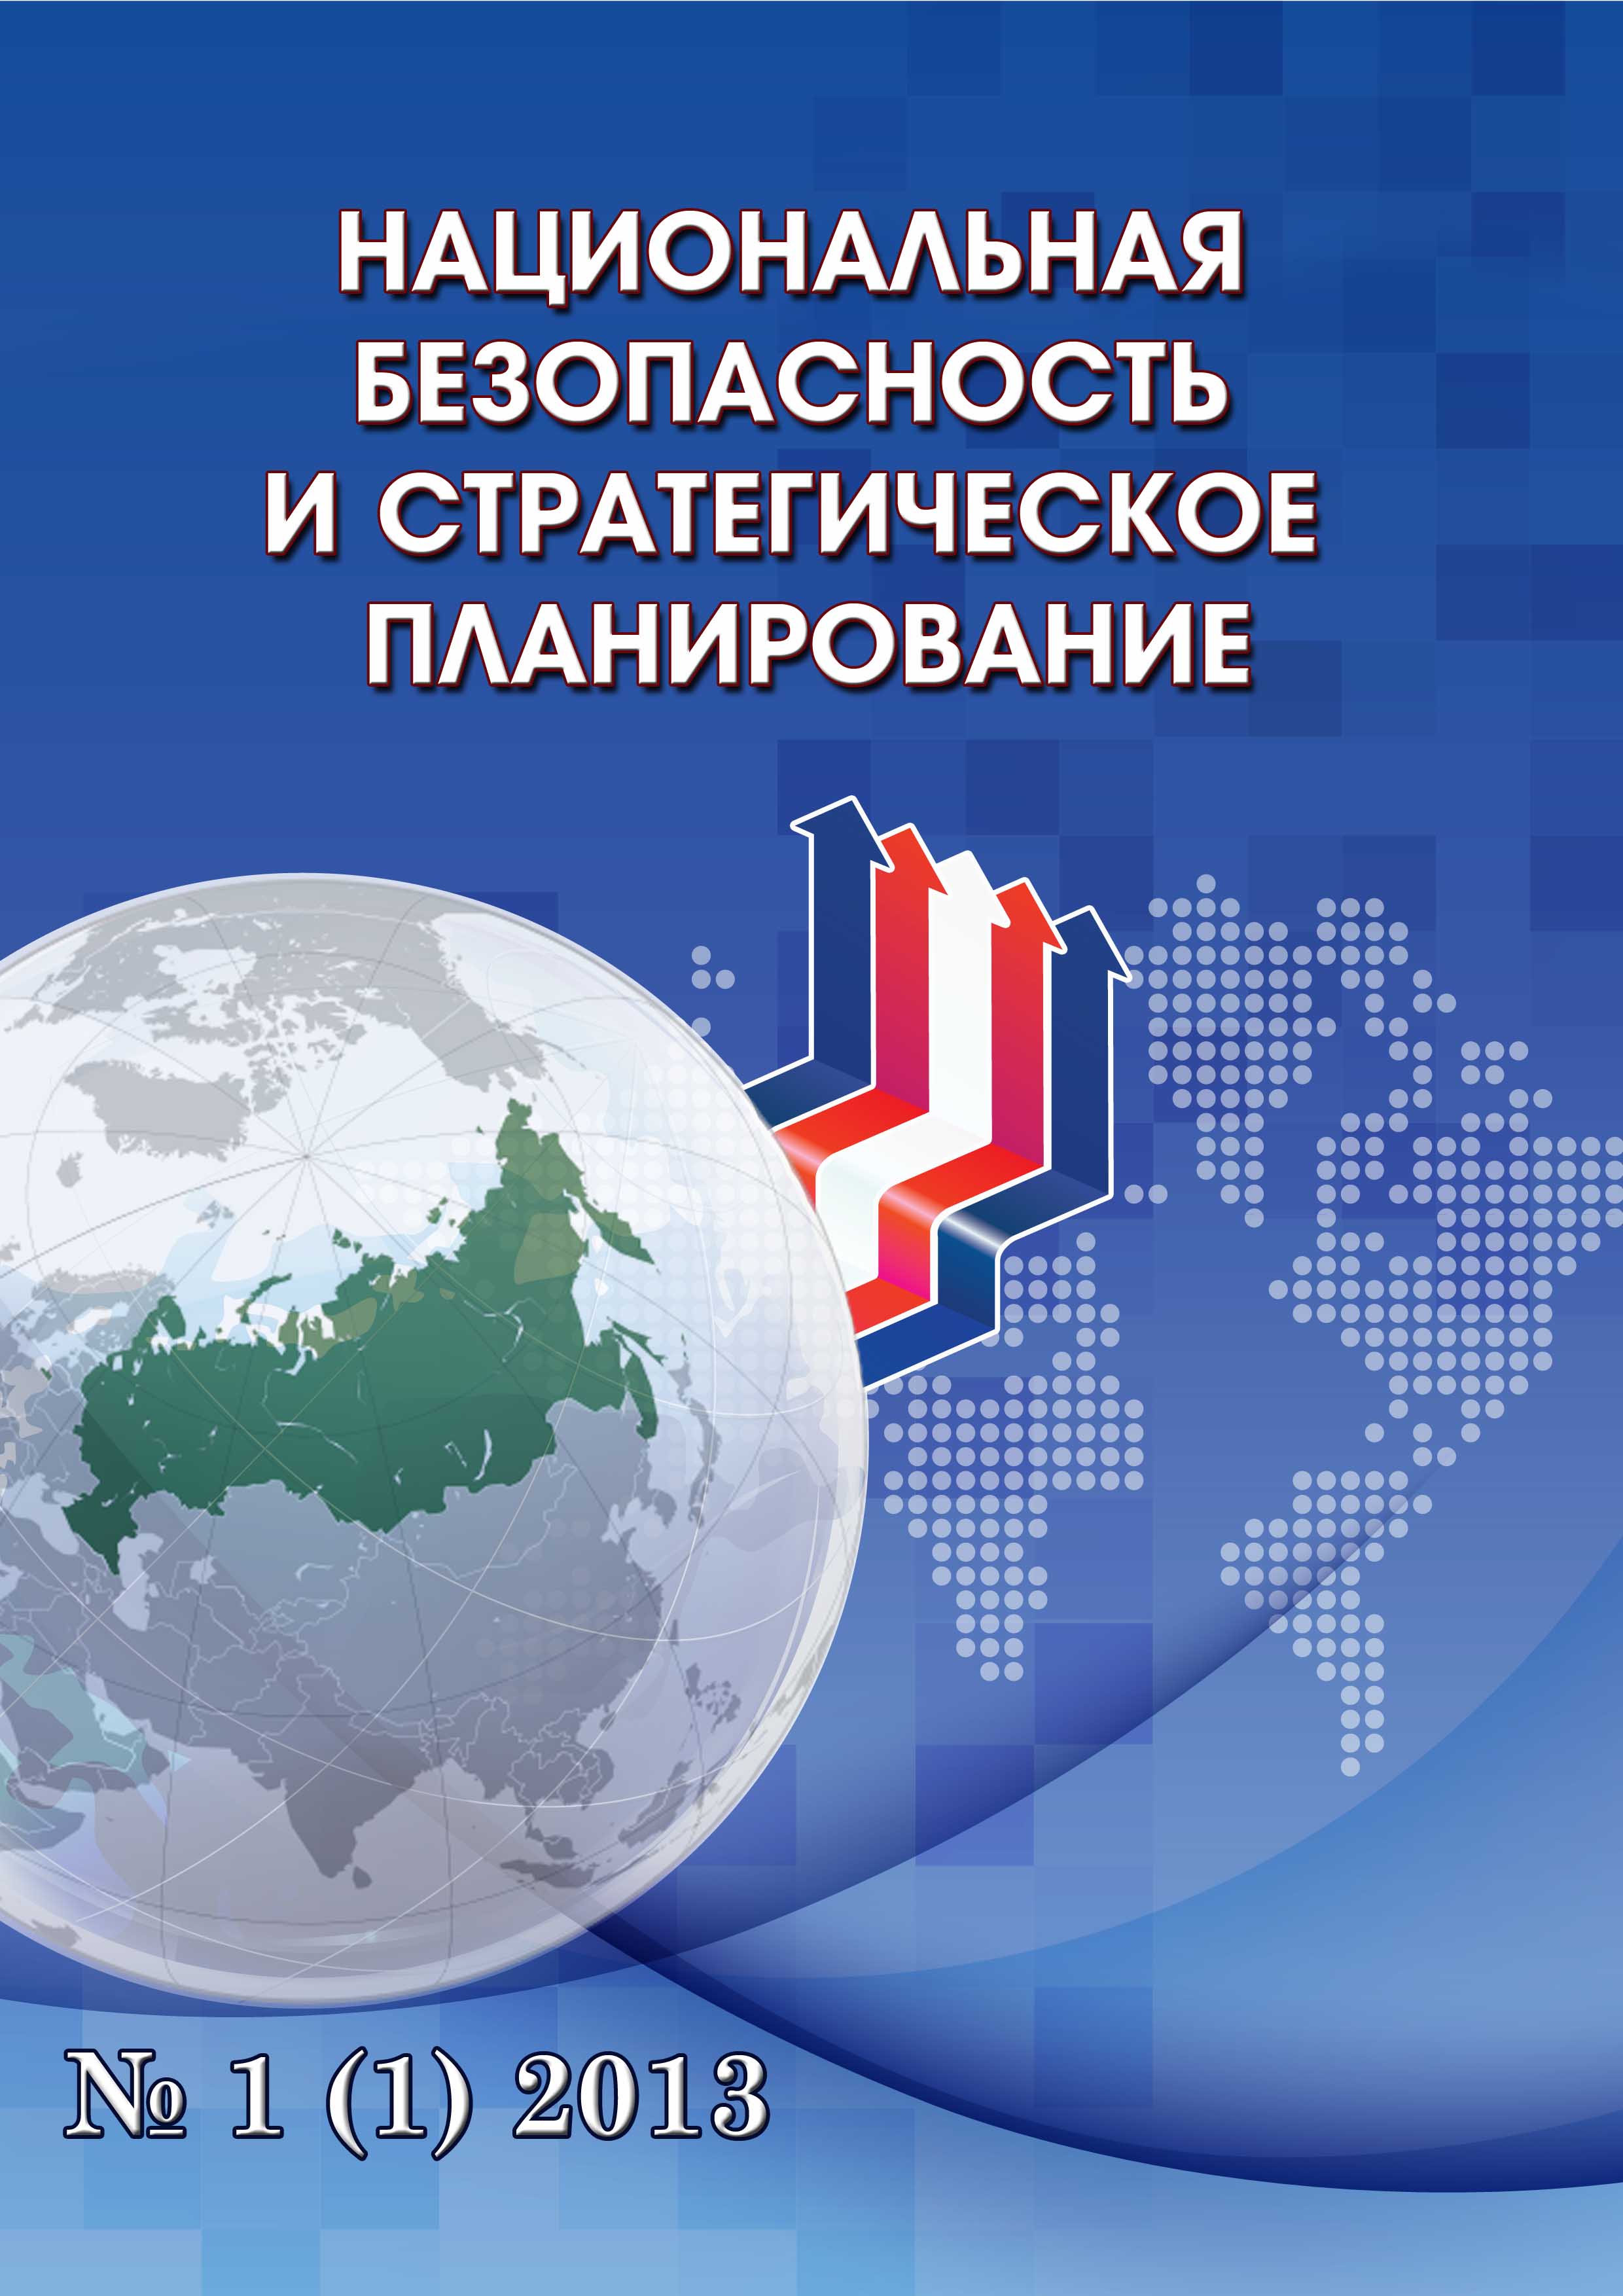             Теоретический анализ основных положений стратегий национальной безопасности Российской Федерации 2015 года и 2021 года
    